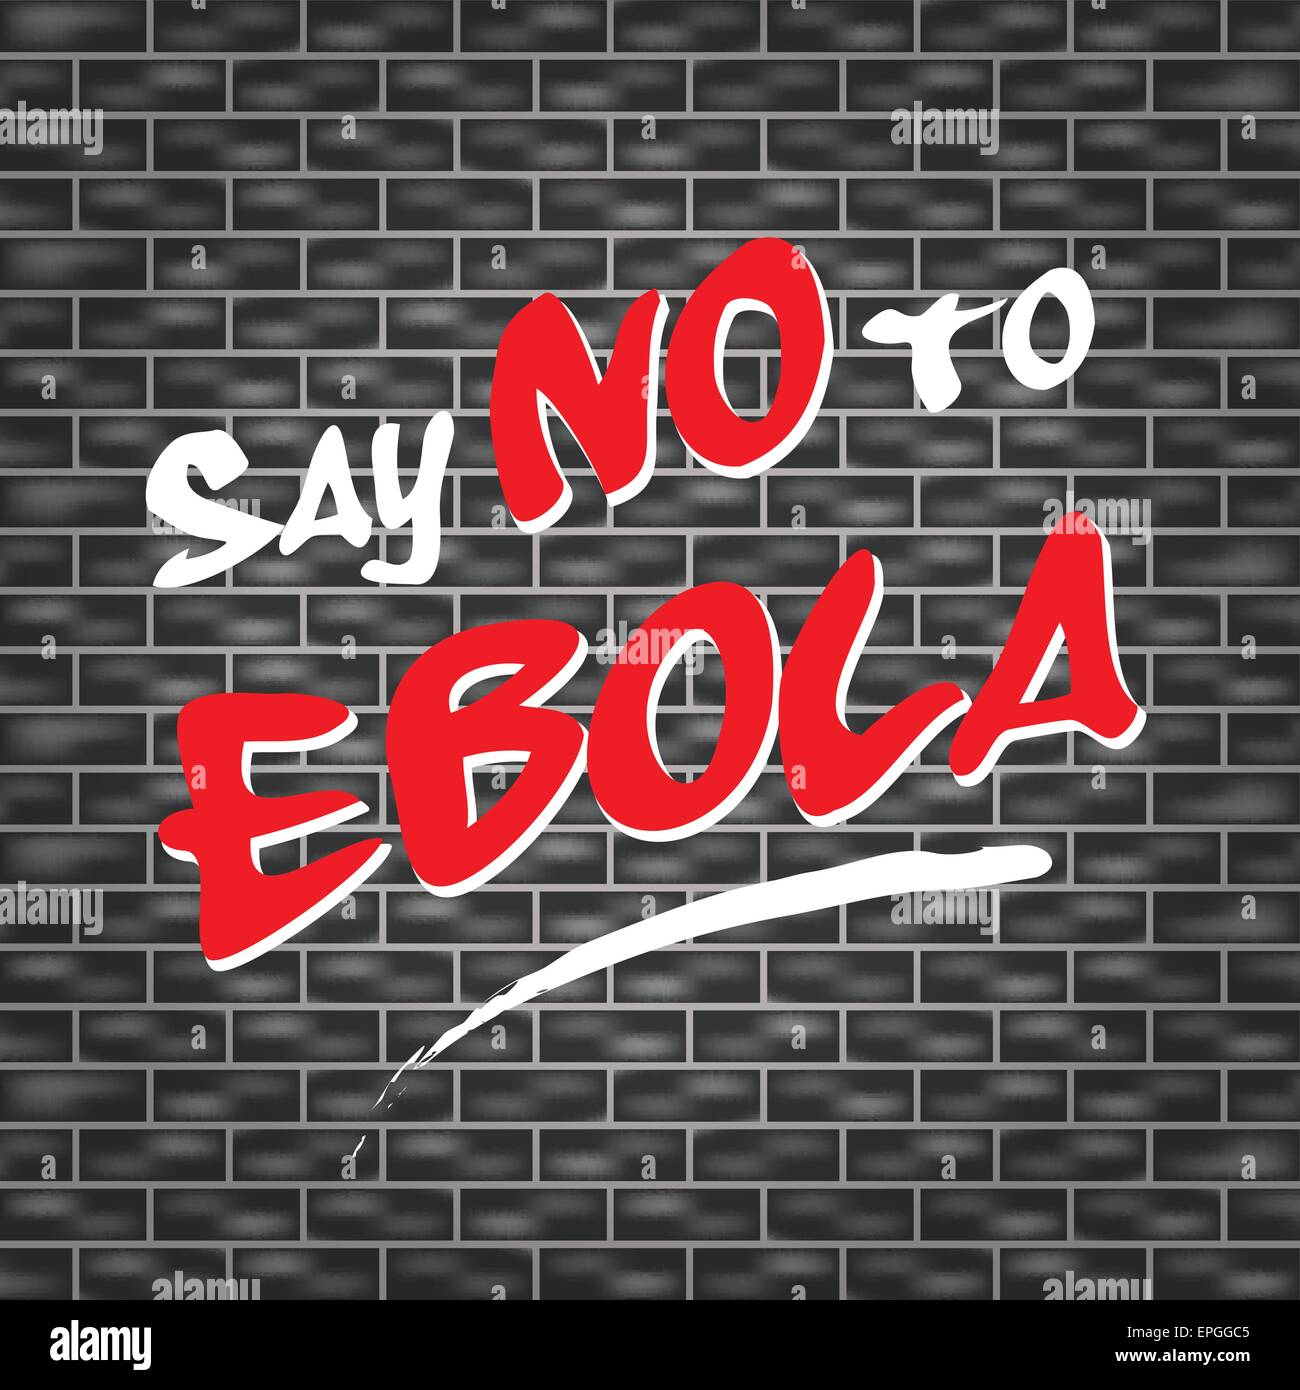 Darstellung der dunklen Wand mit Graffiti keine Ebola Stock Vektor